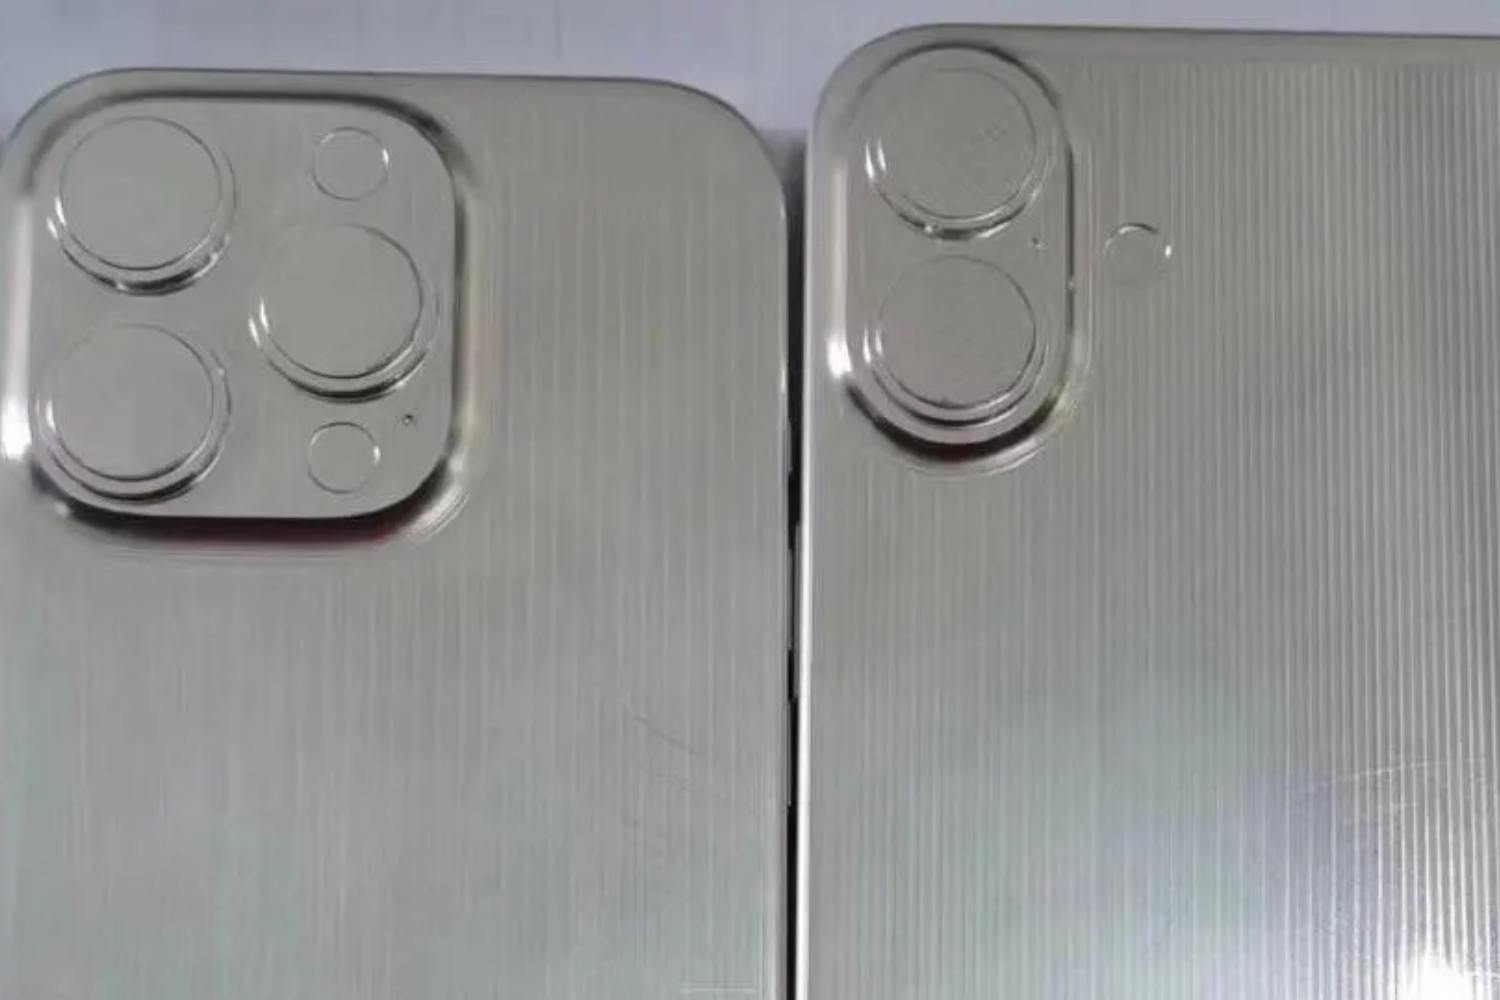 iphone 16: moldes de fabricação revelam detalhes da nova linha da apple